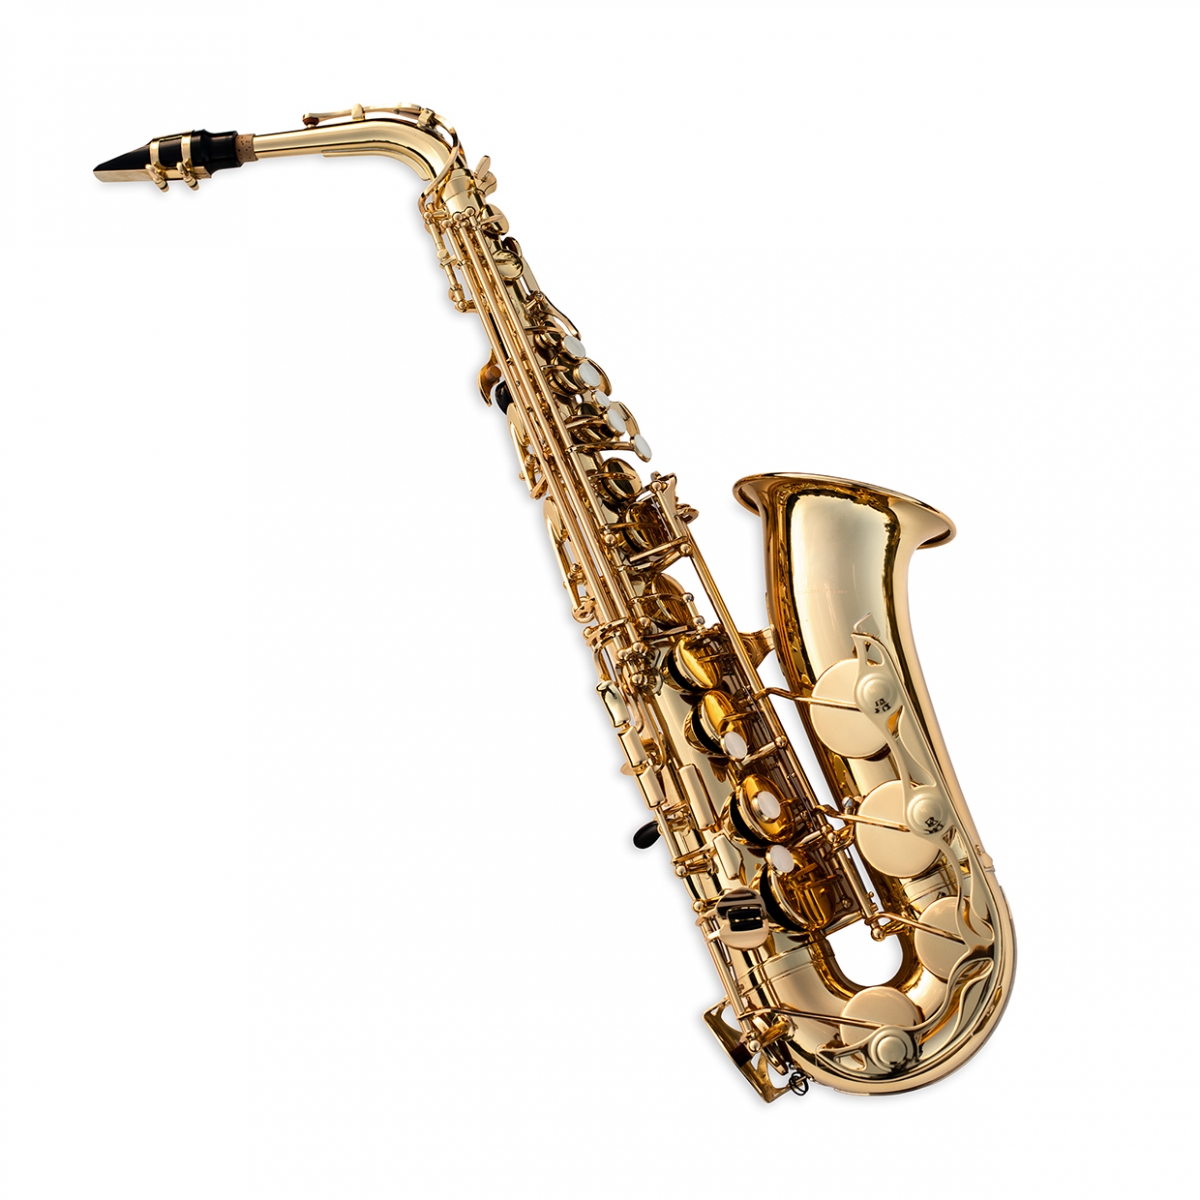 Imagen en la que se ve un saxofón